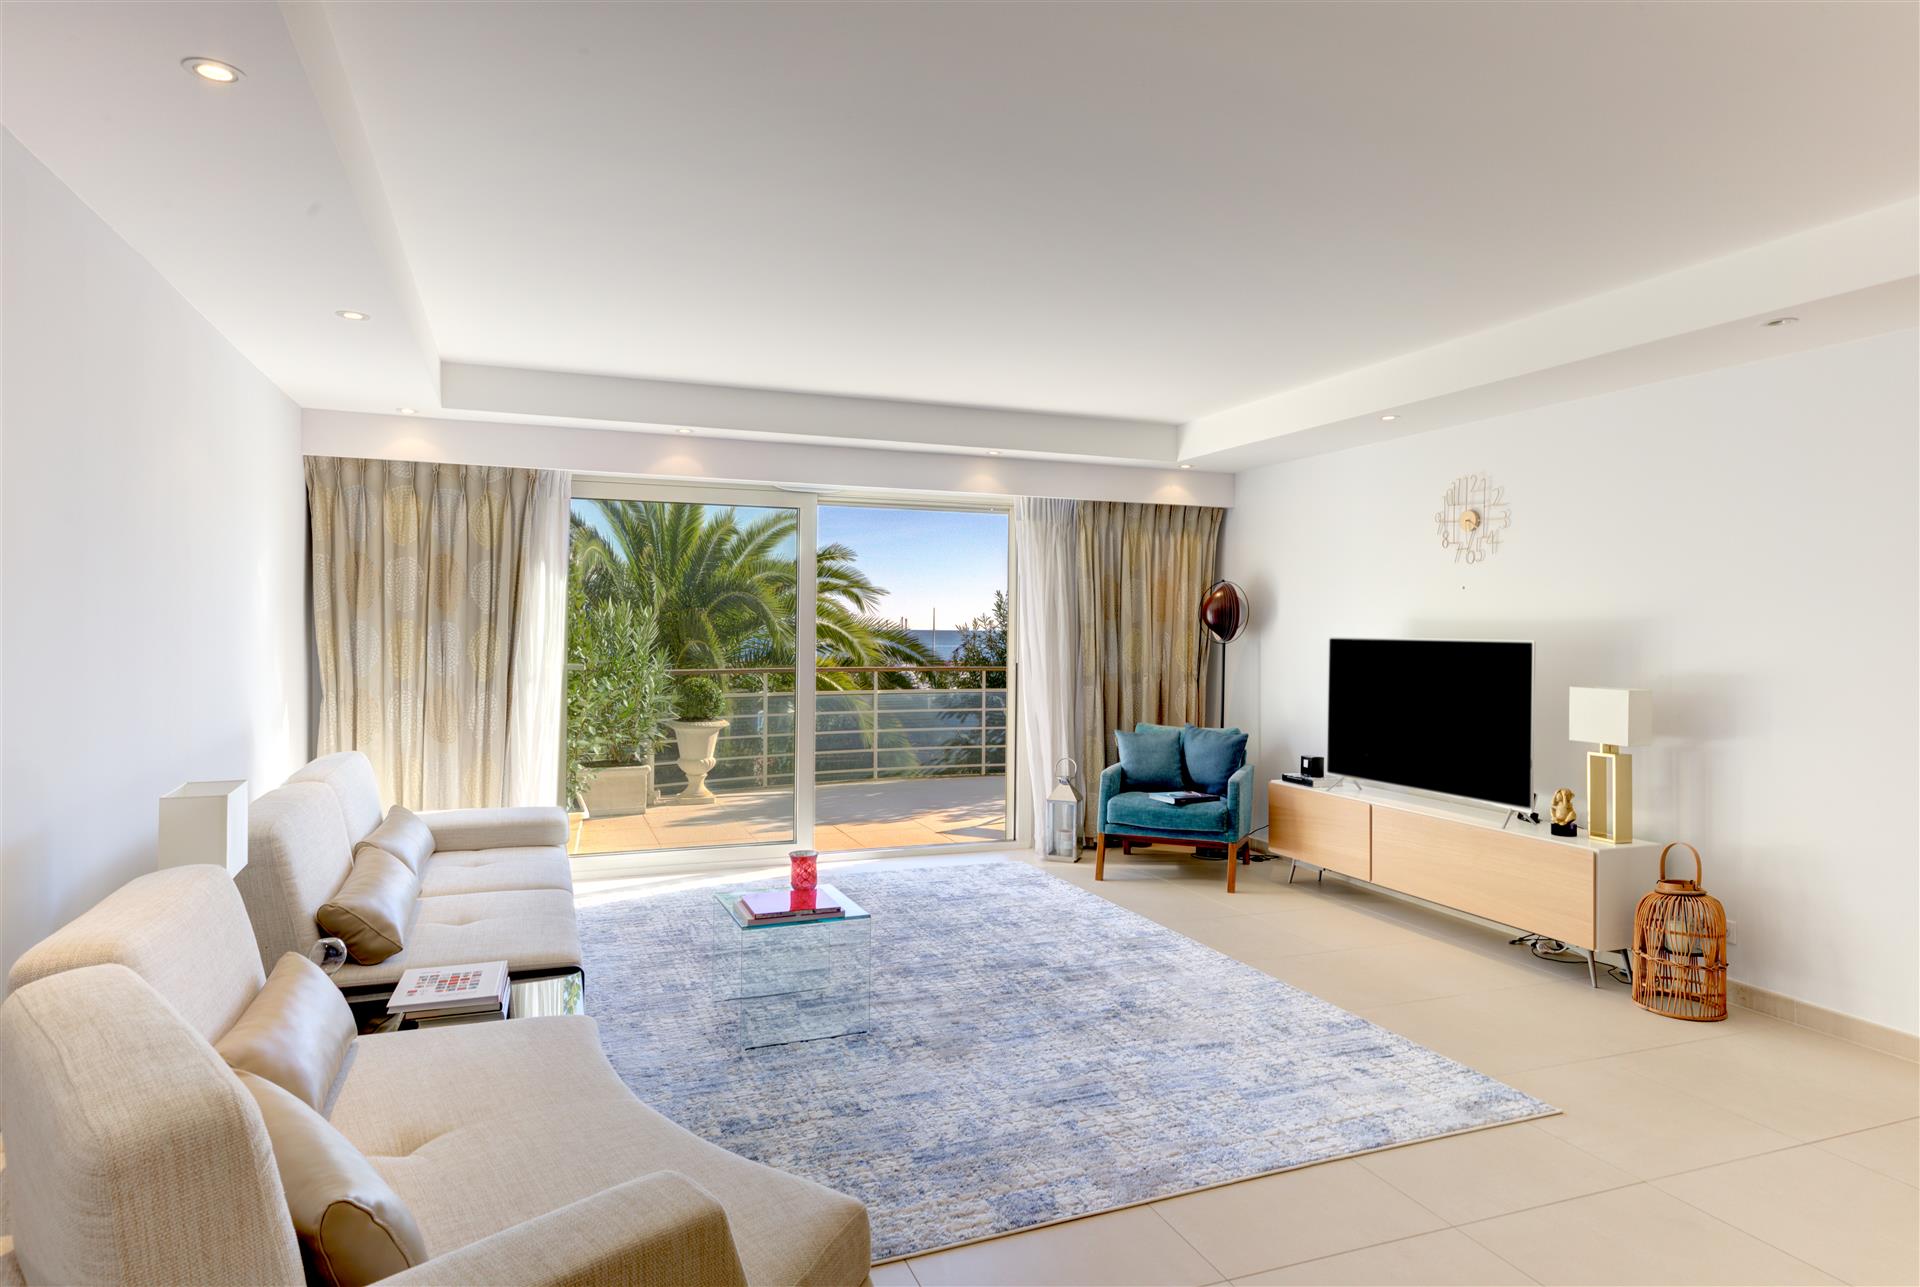 Magnifique appartement de luxe Neuf 150m2, face à la Mer. Direct proprietaire-direct owner